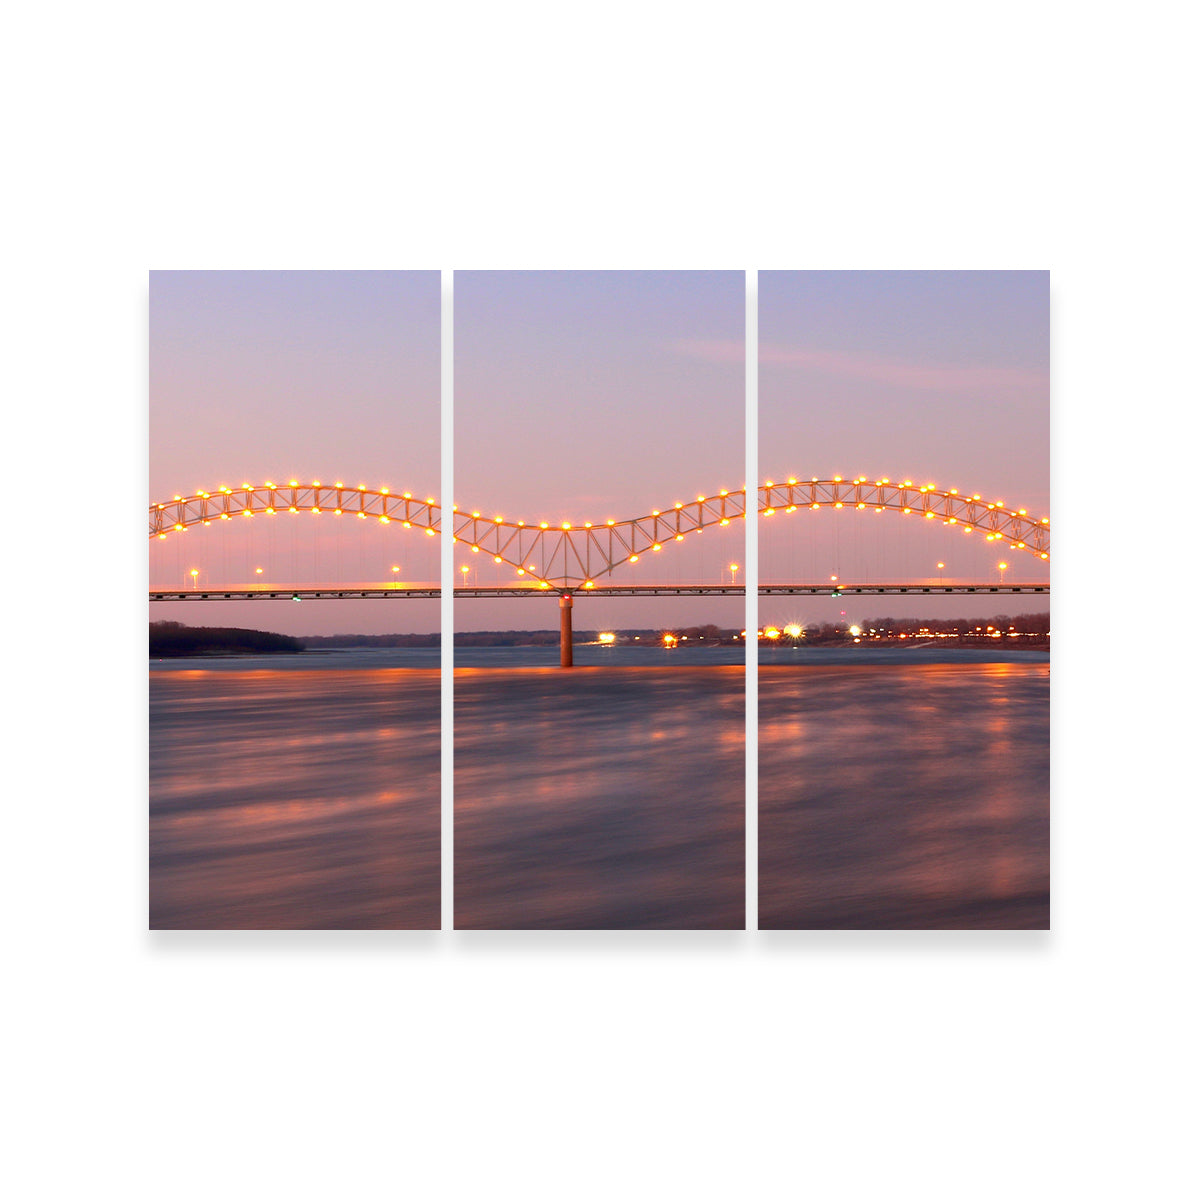 Memphis Arkansas Bridge